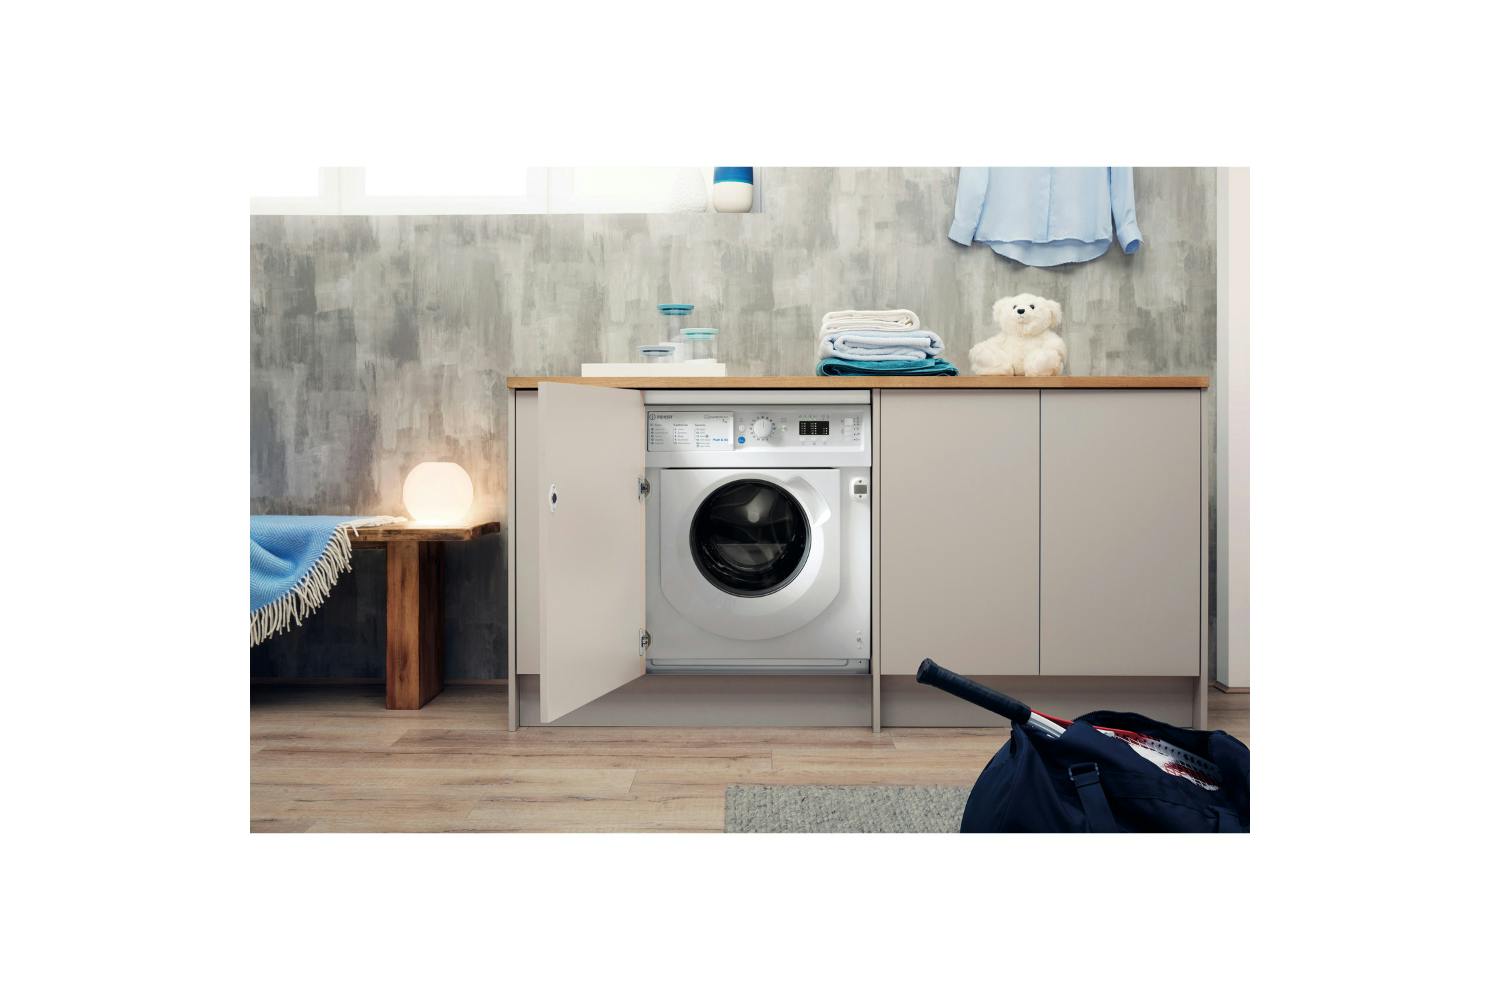 Indesit 7kg Built-in Washing Machine | BIWMIL71252UKN